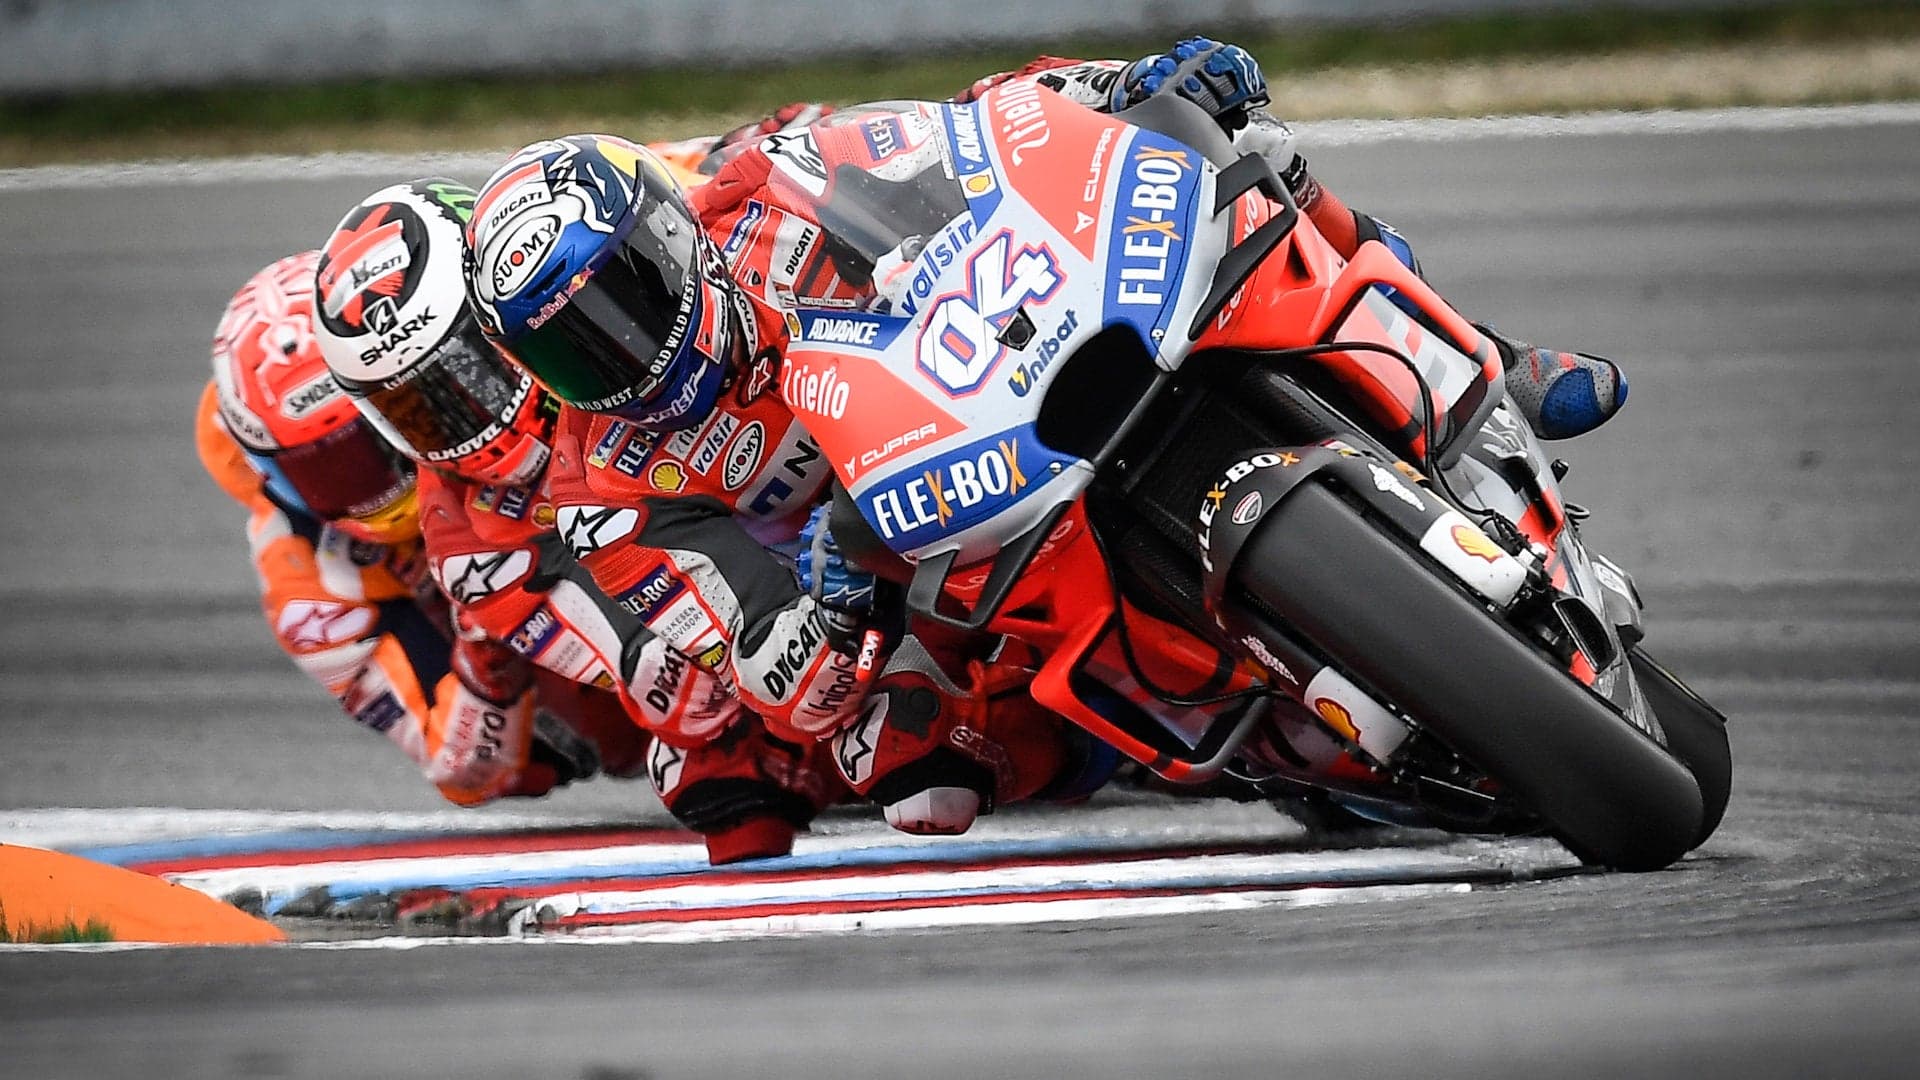 Ducati and Dovizioso Win the 2018 MotoGP Grand Prix of the Czech Republic